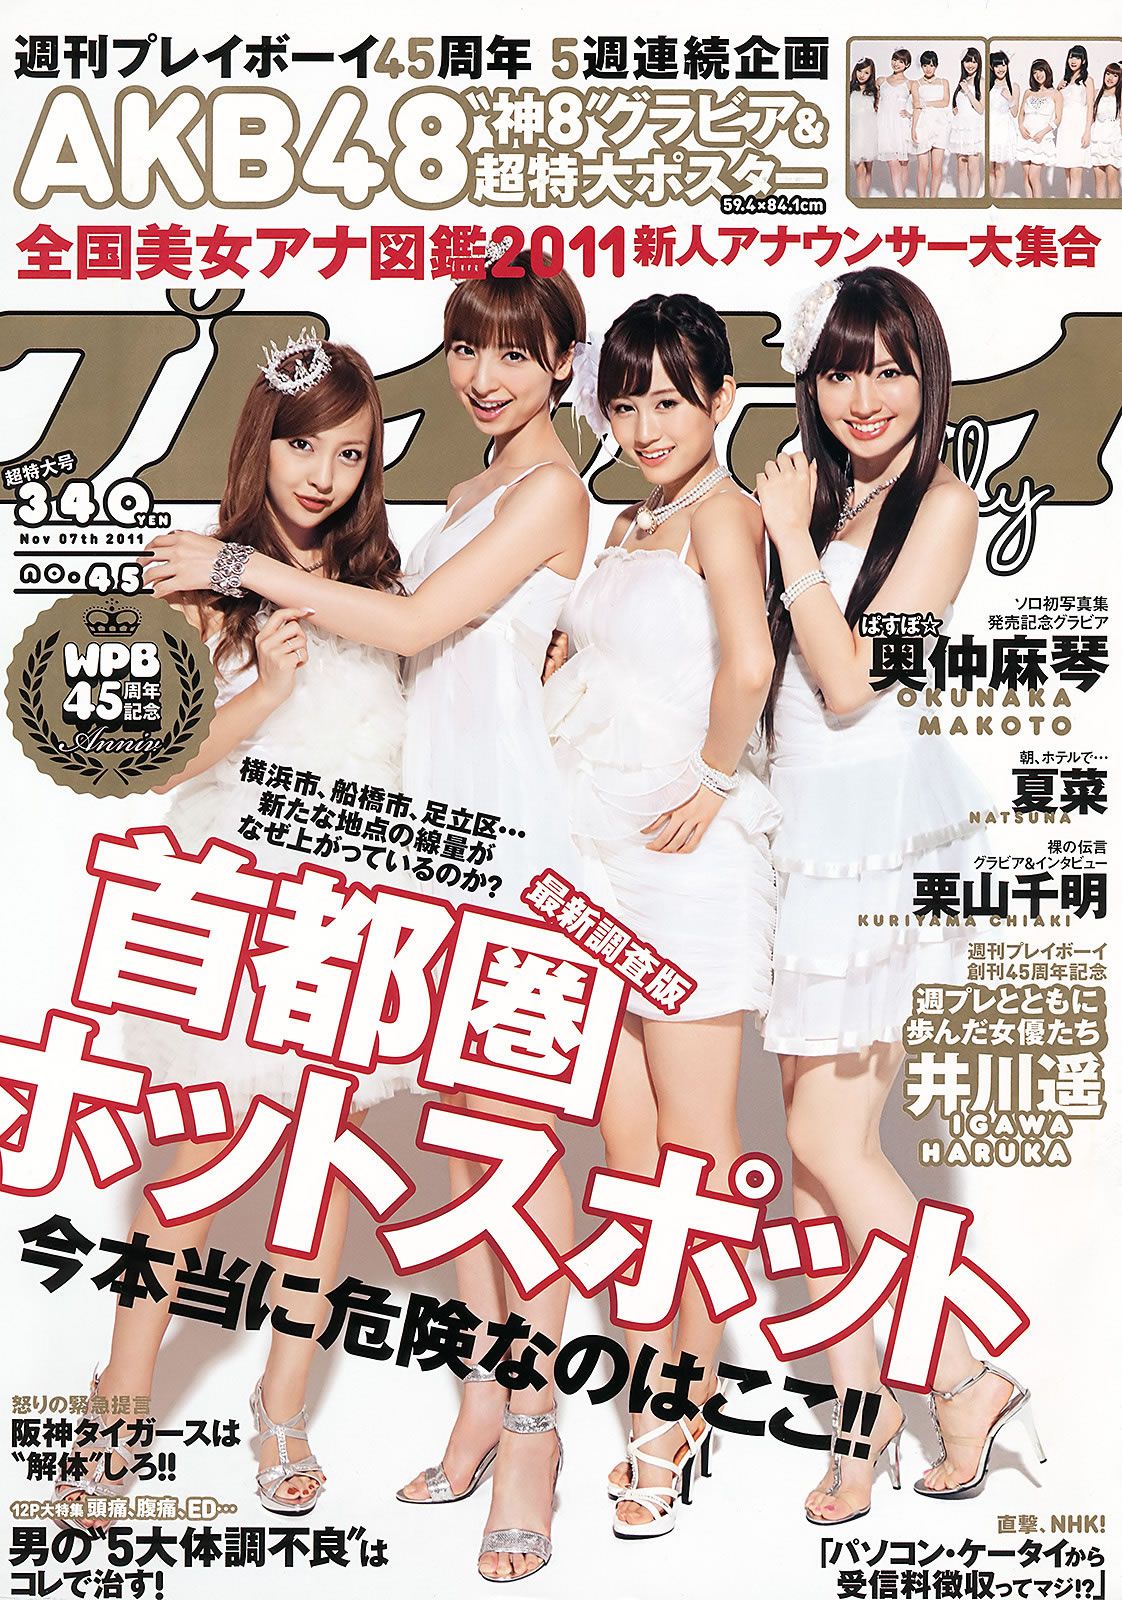 [Weekly Playboy] 2011 No.45 AKB48 奥仲麻琴 夏菜 井川遥 栗山千明 [49P]